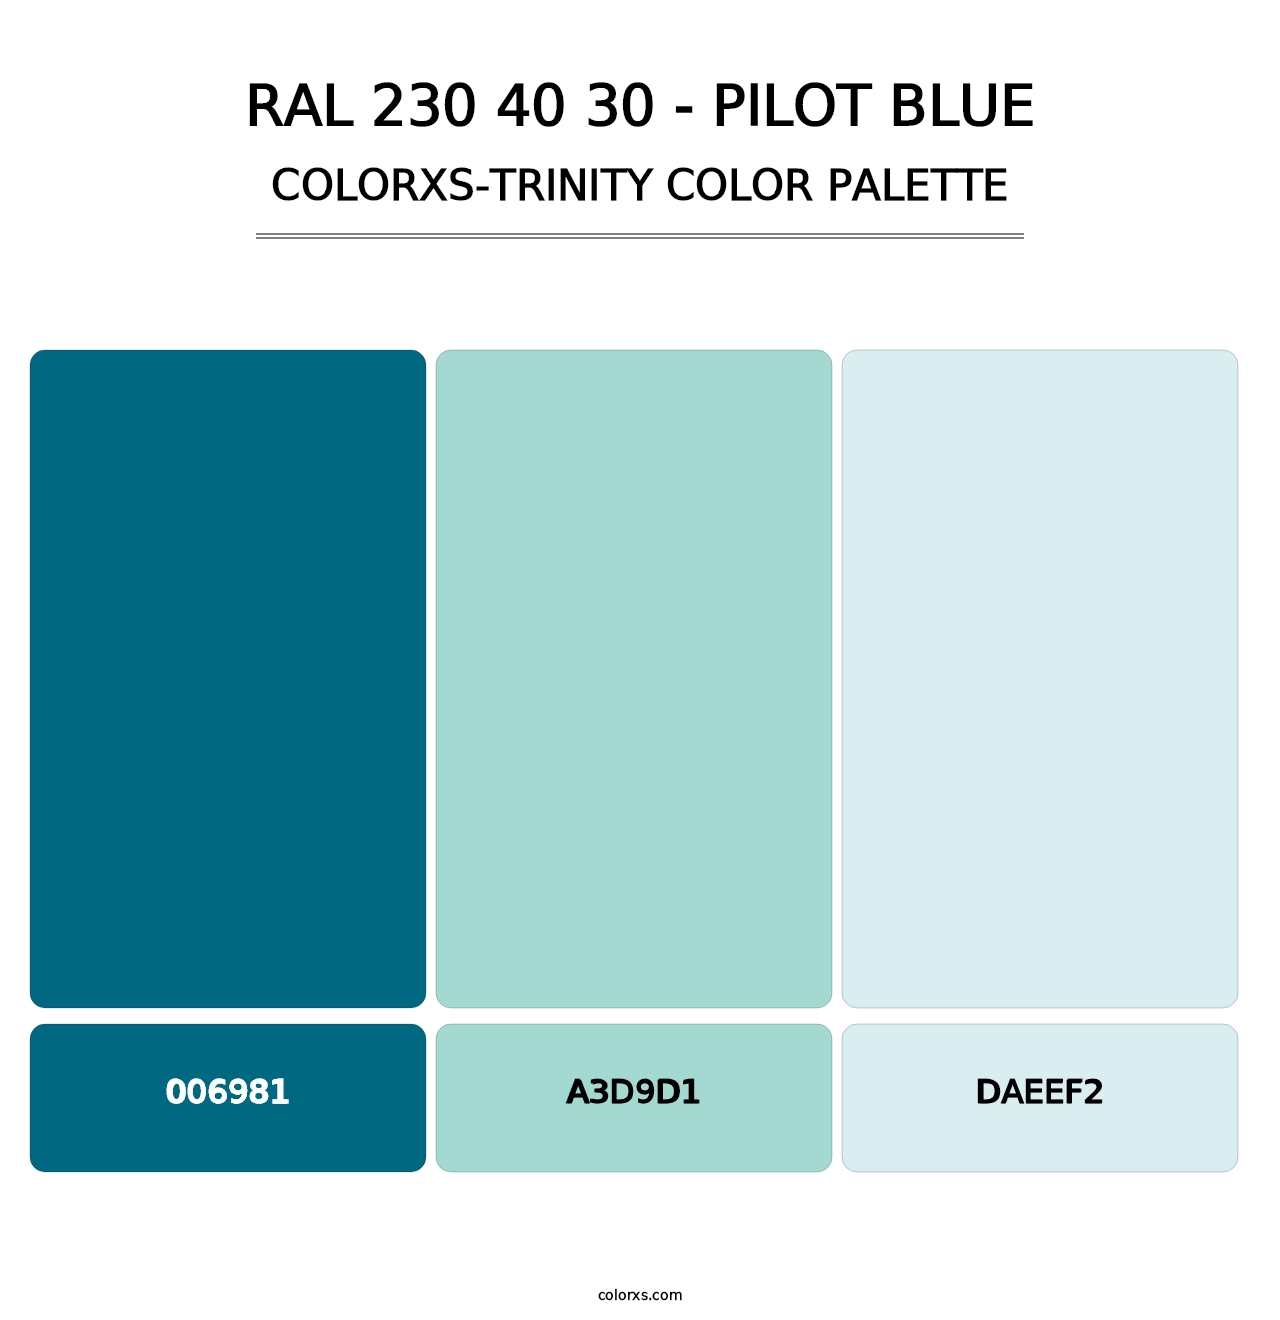 RAL 230 40 30 - Pilot Blue - Colorxs Trinity Palette